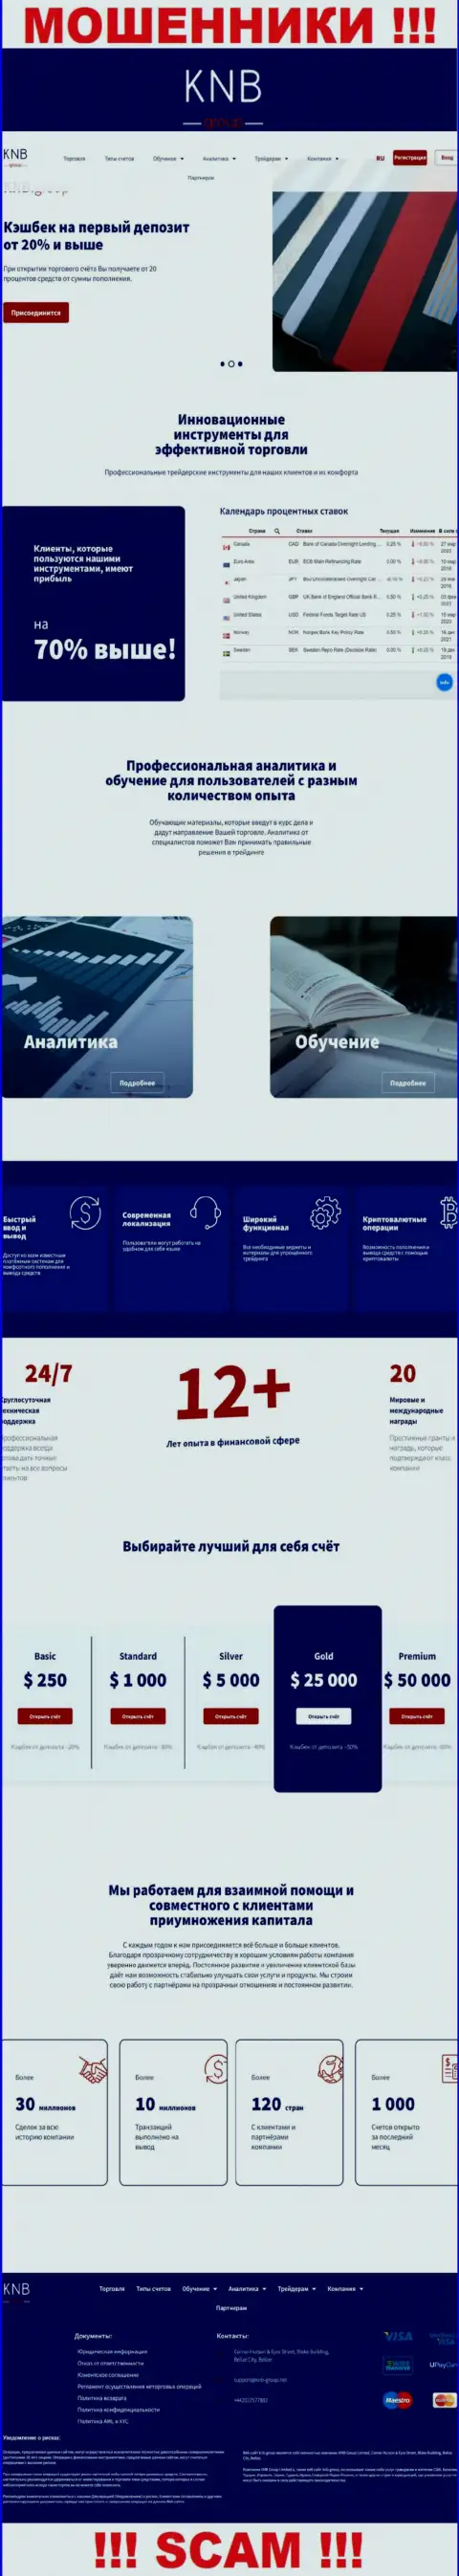 Обзор официального информационного портала мошенников КНБ Групп